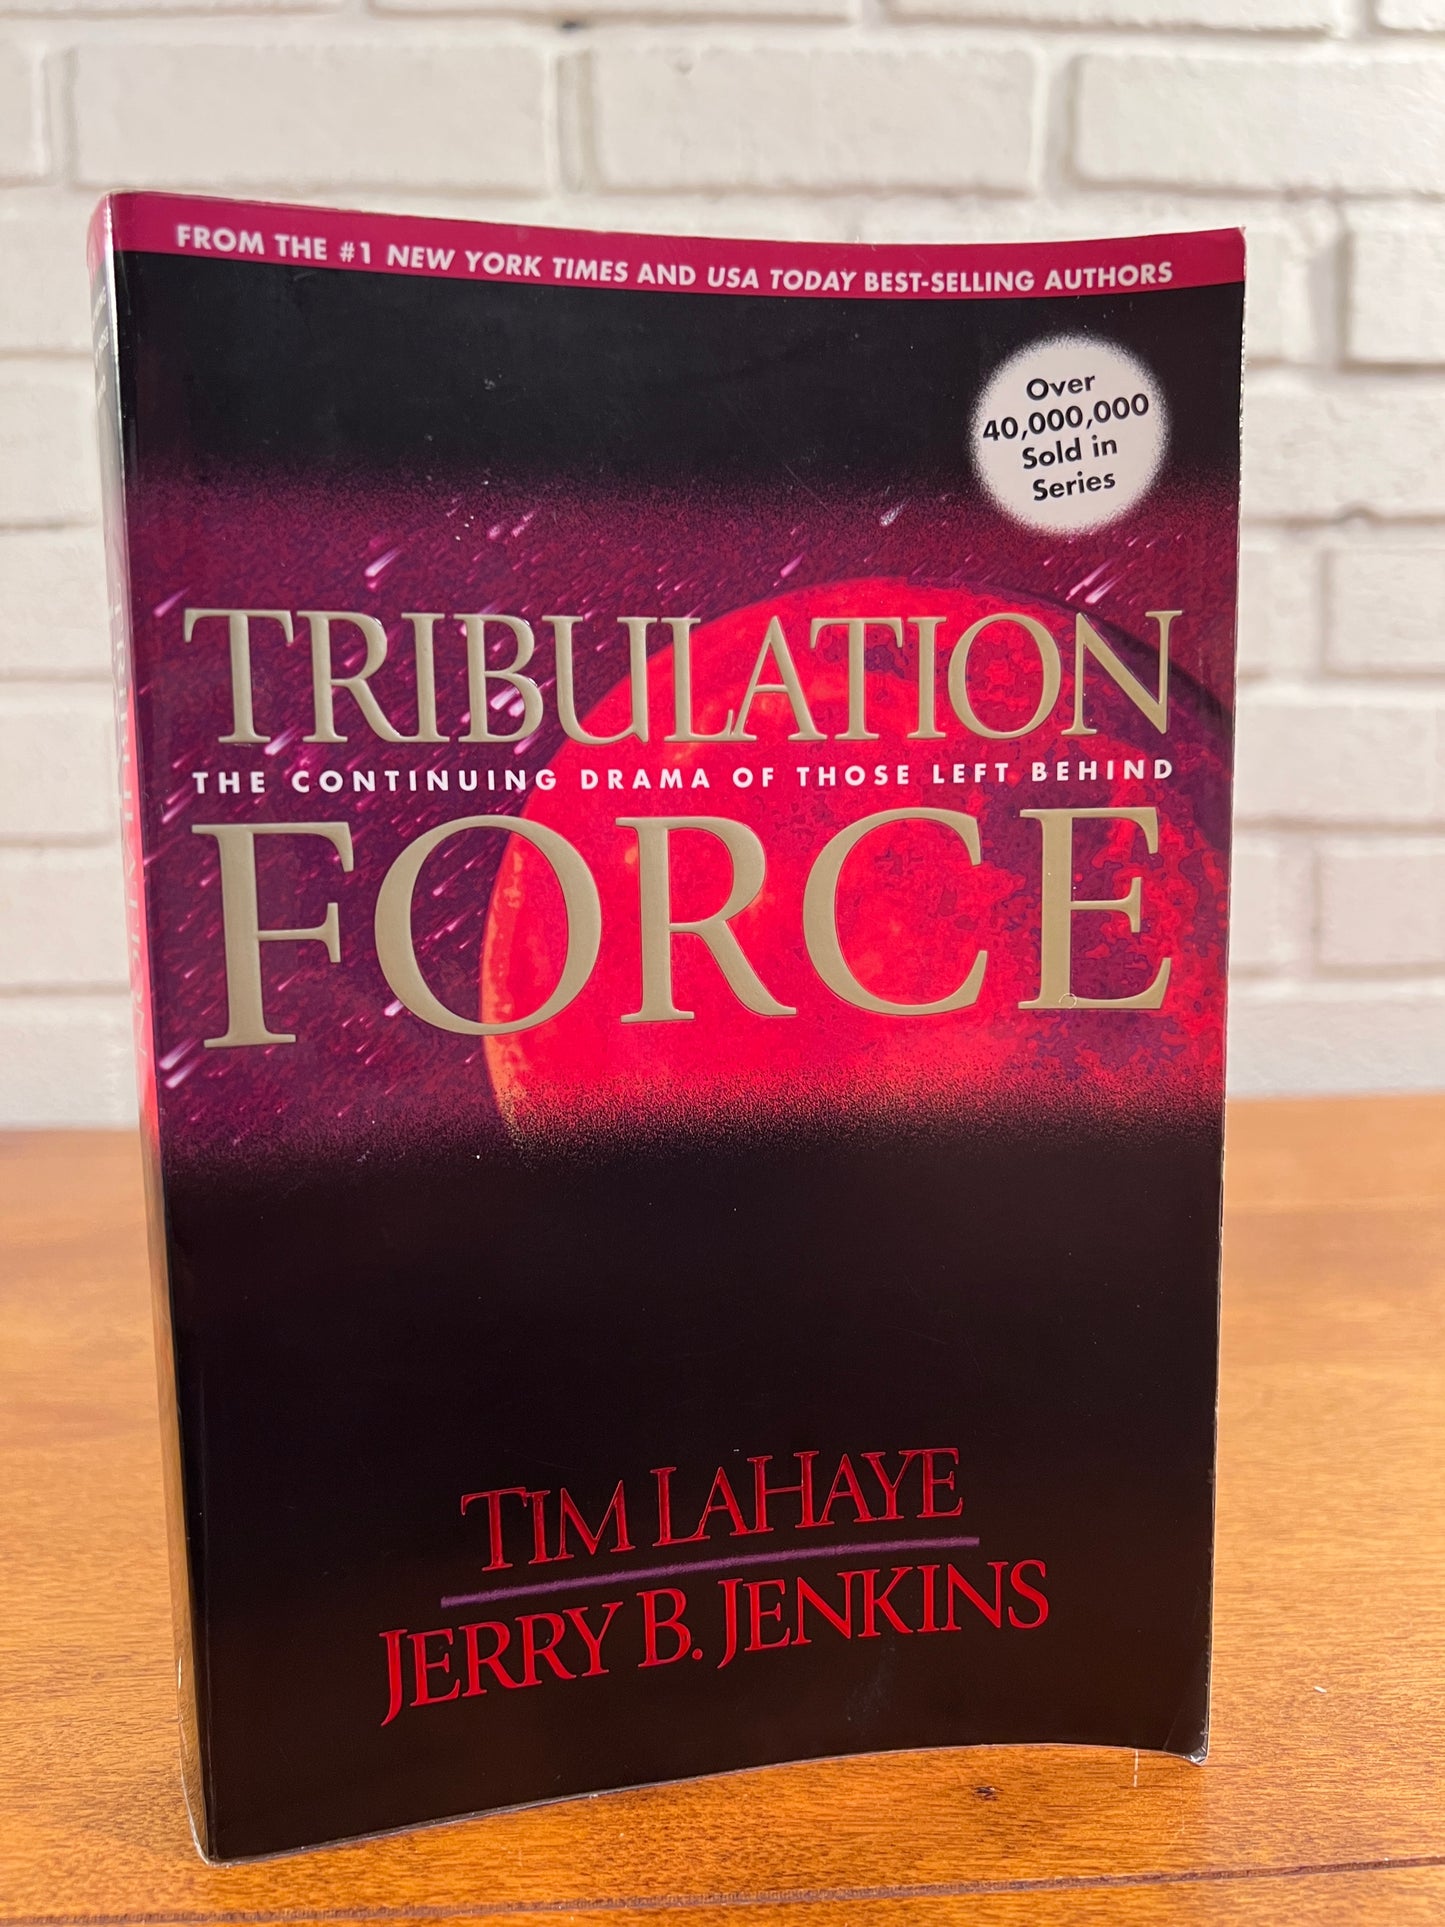 Tribulation Force by Tim LayHaye and Jerry B. Jenkins